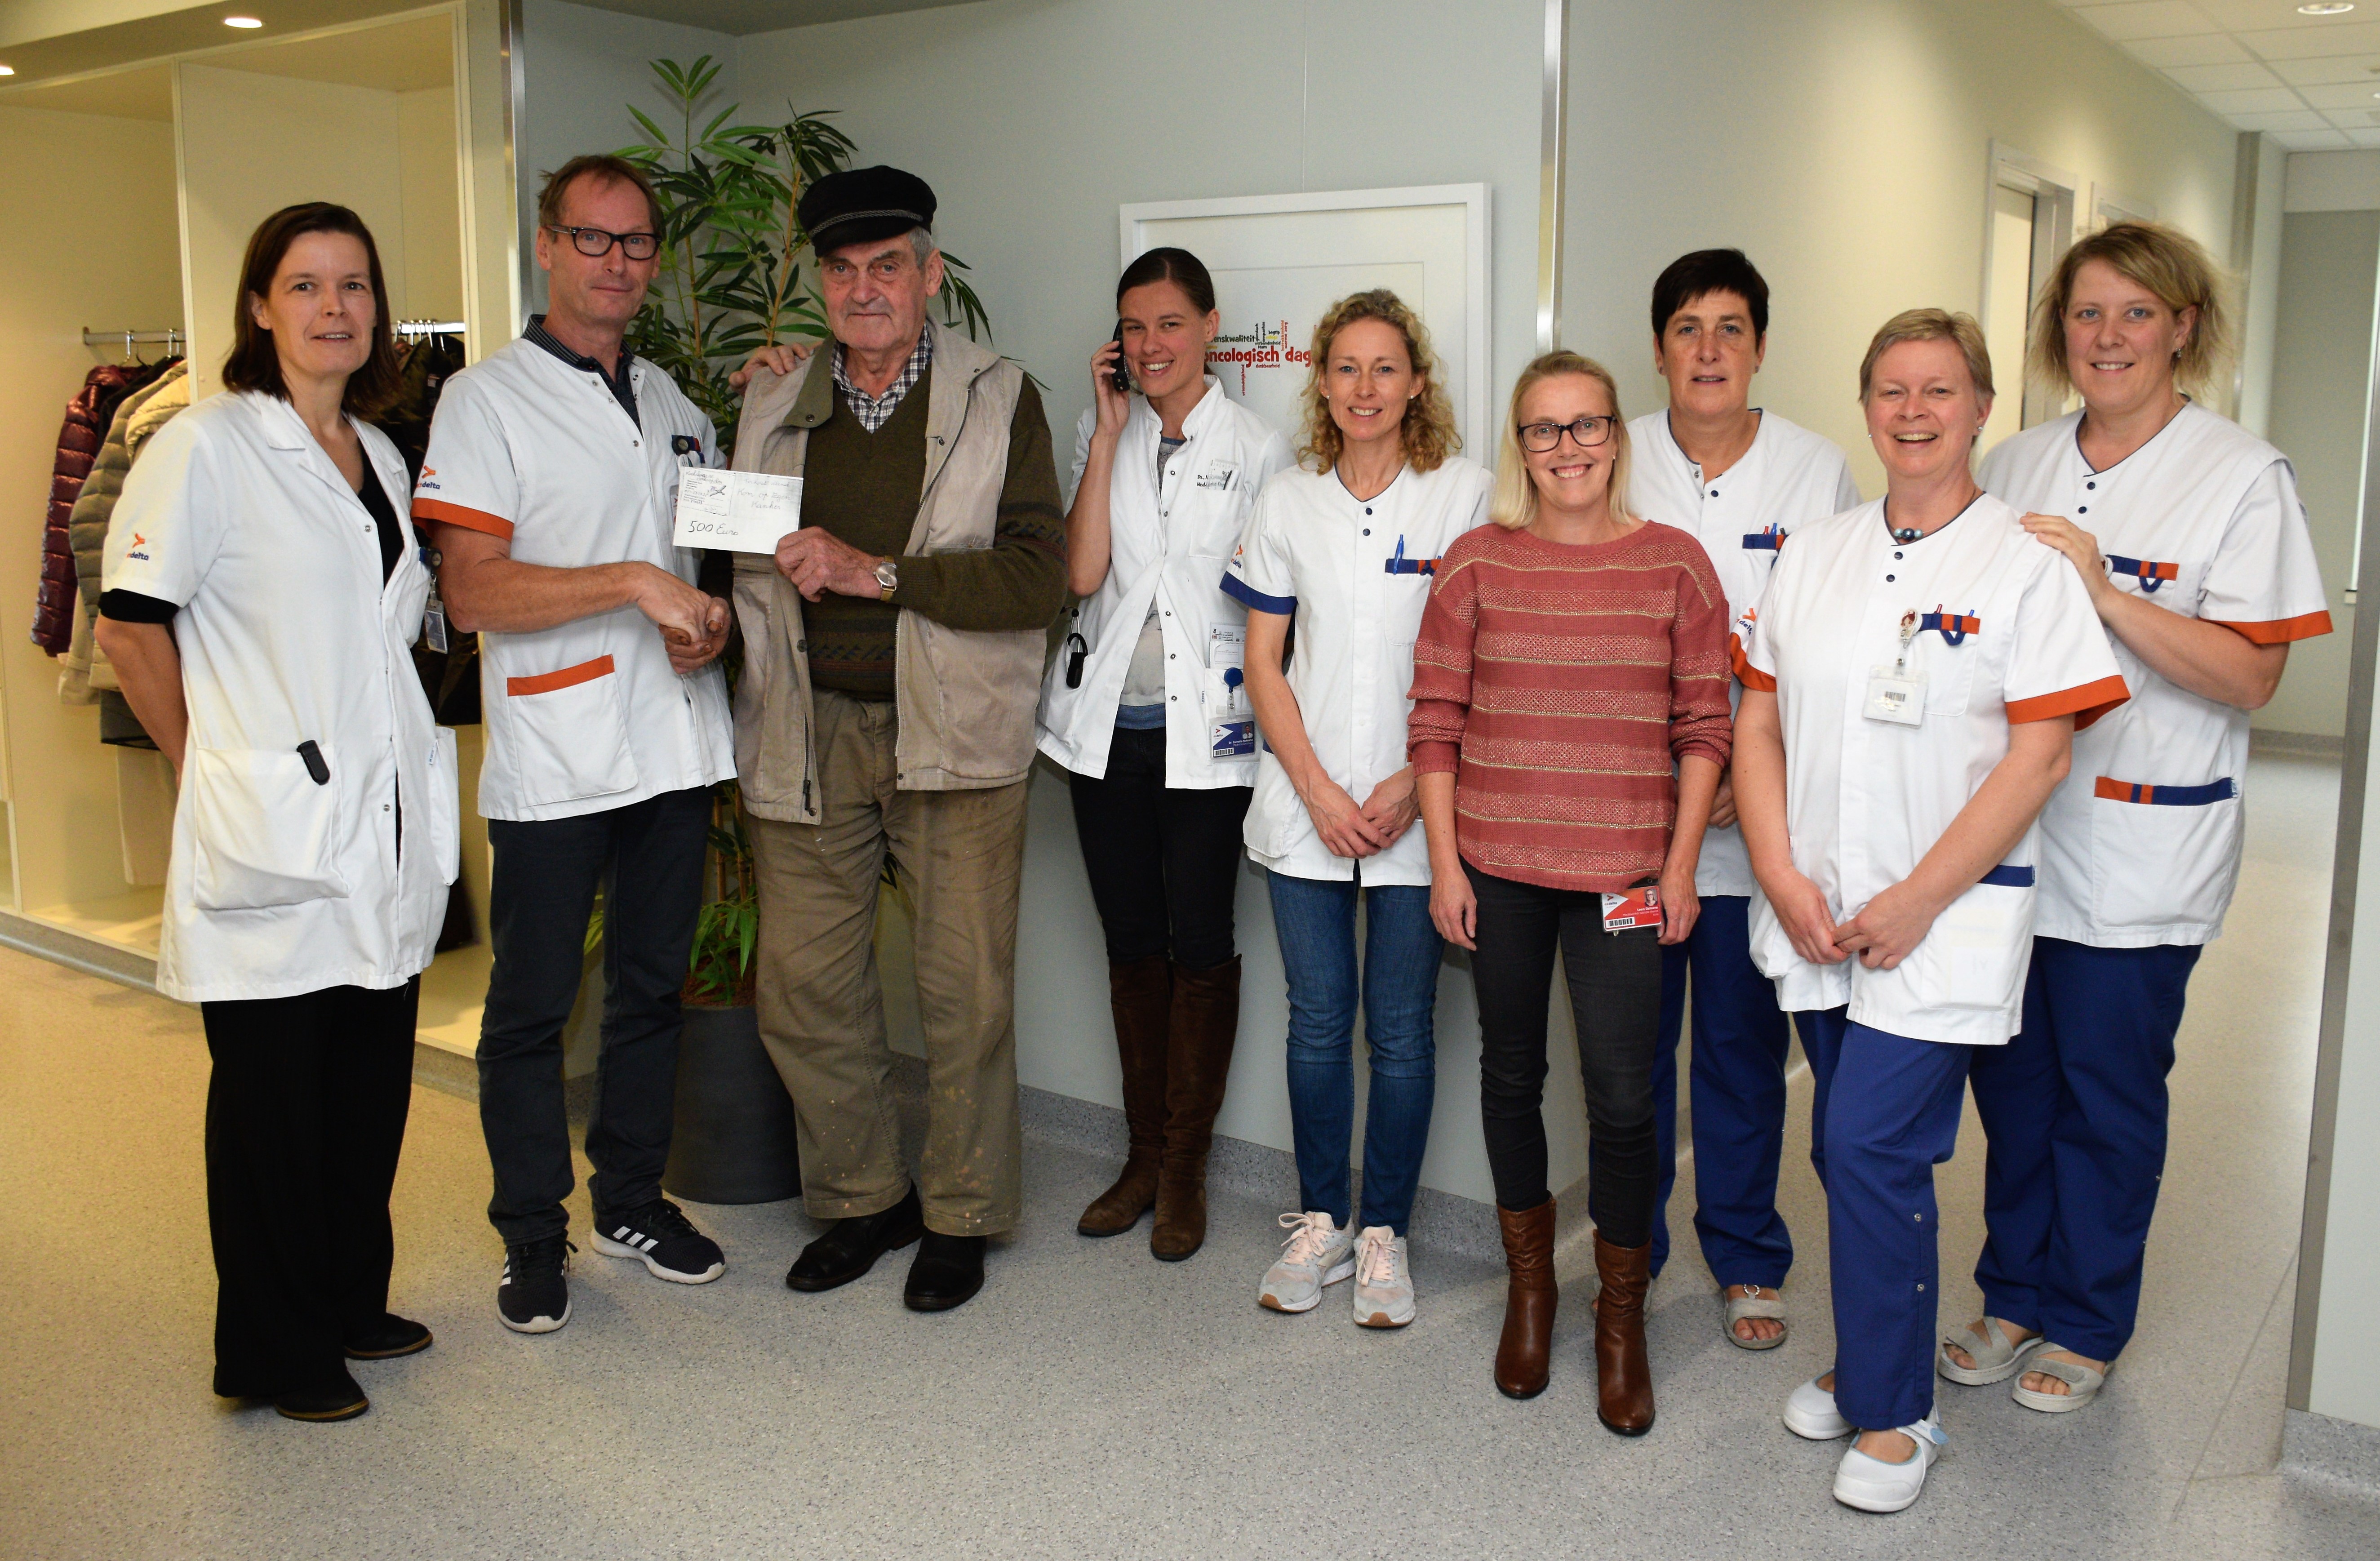 Weerman en volksspelendokter Gery Haerynck schenkt vijfhonderd euro aan dienst oncologie AZ Delta Torhout